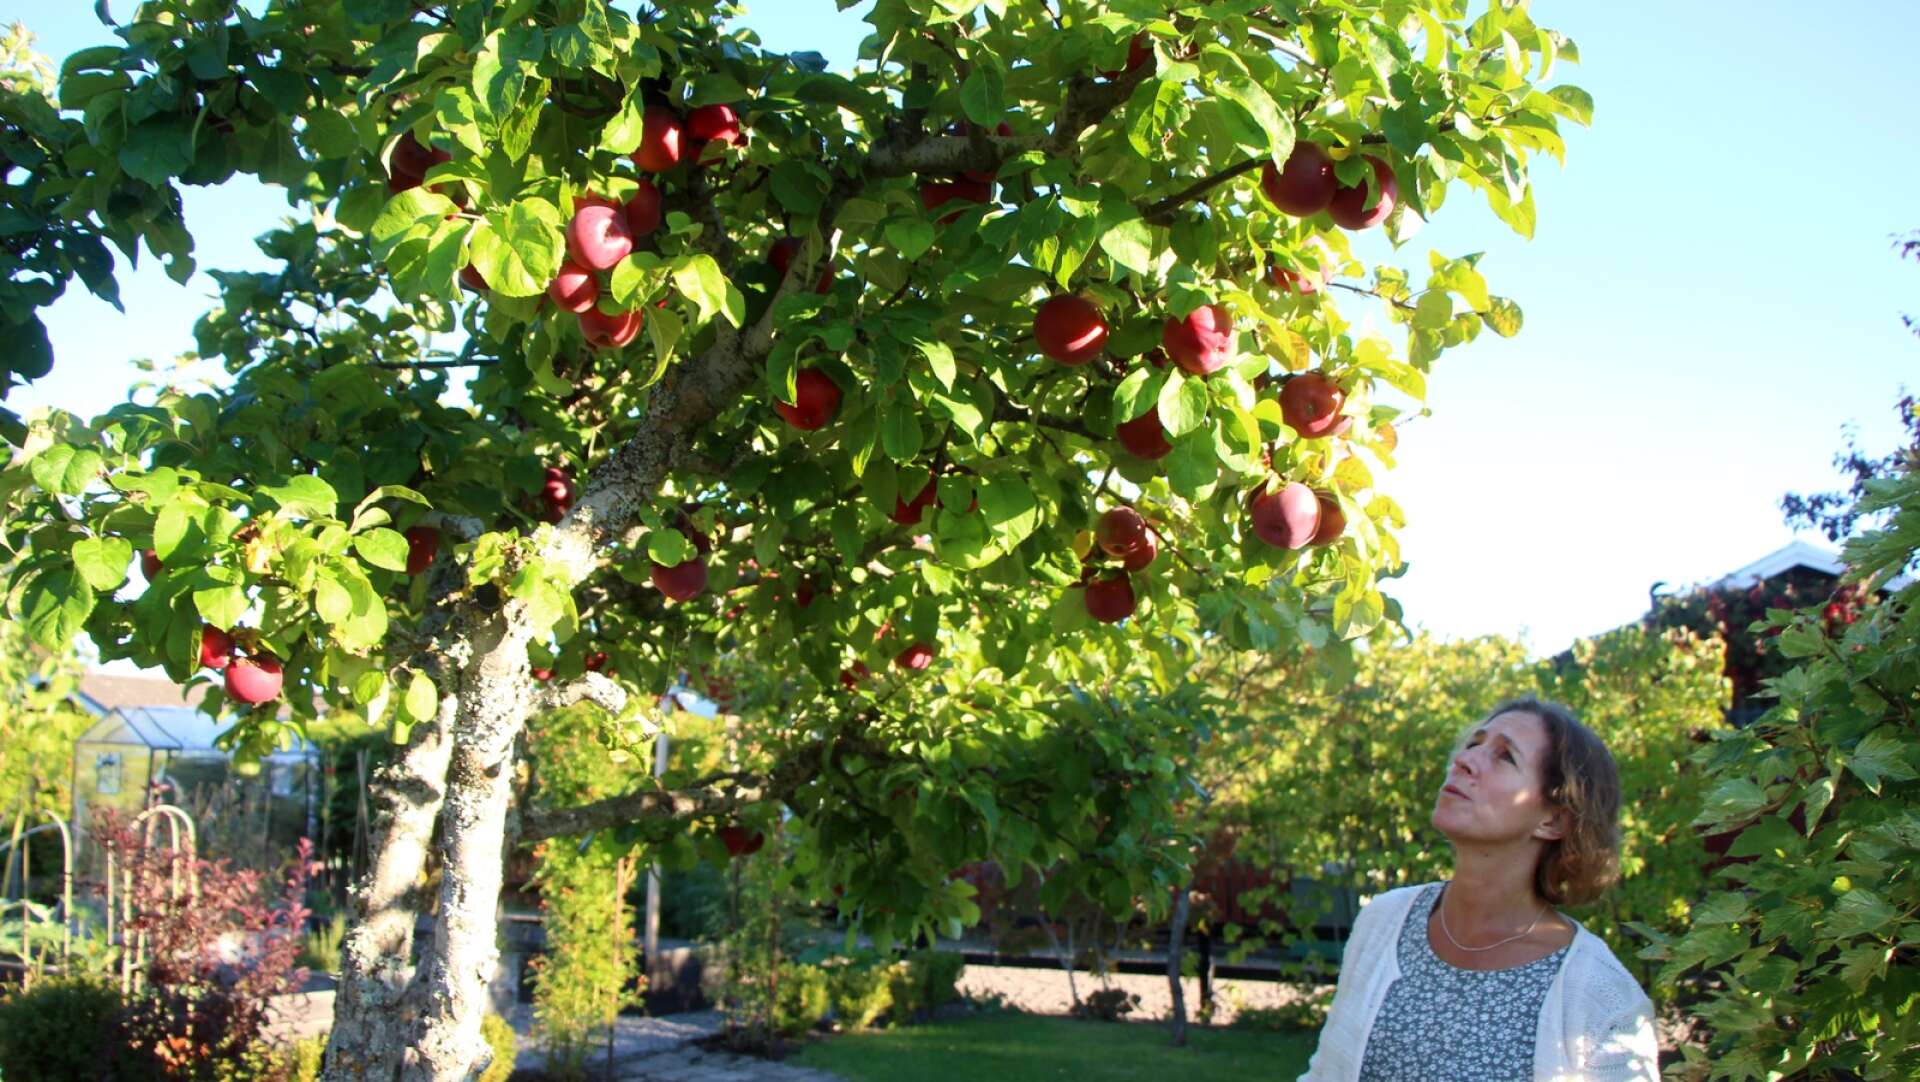 Nu blir det mycket äppelkaka, konstaterar Johanna Ringqvist, då äppelträdet ger en bra skörd i år. Vilken sorts äpplen det är vet hon inte, men de är vackert röda och smakar gott.